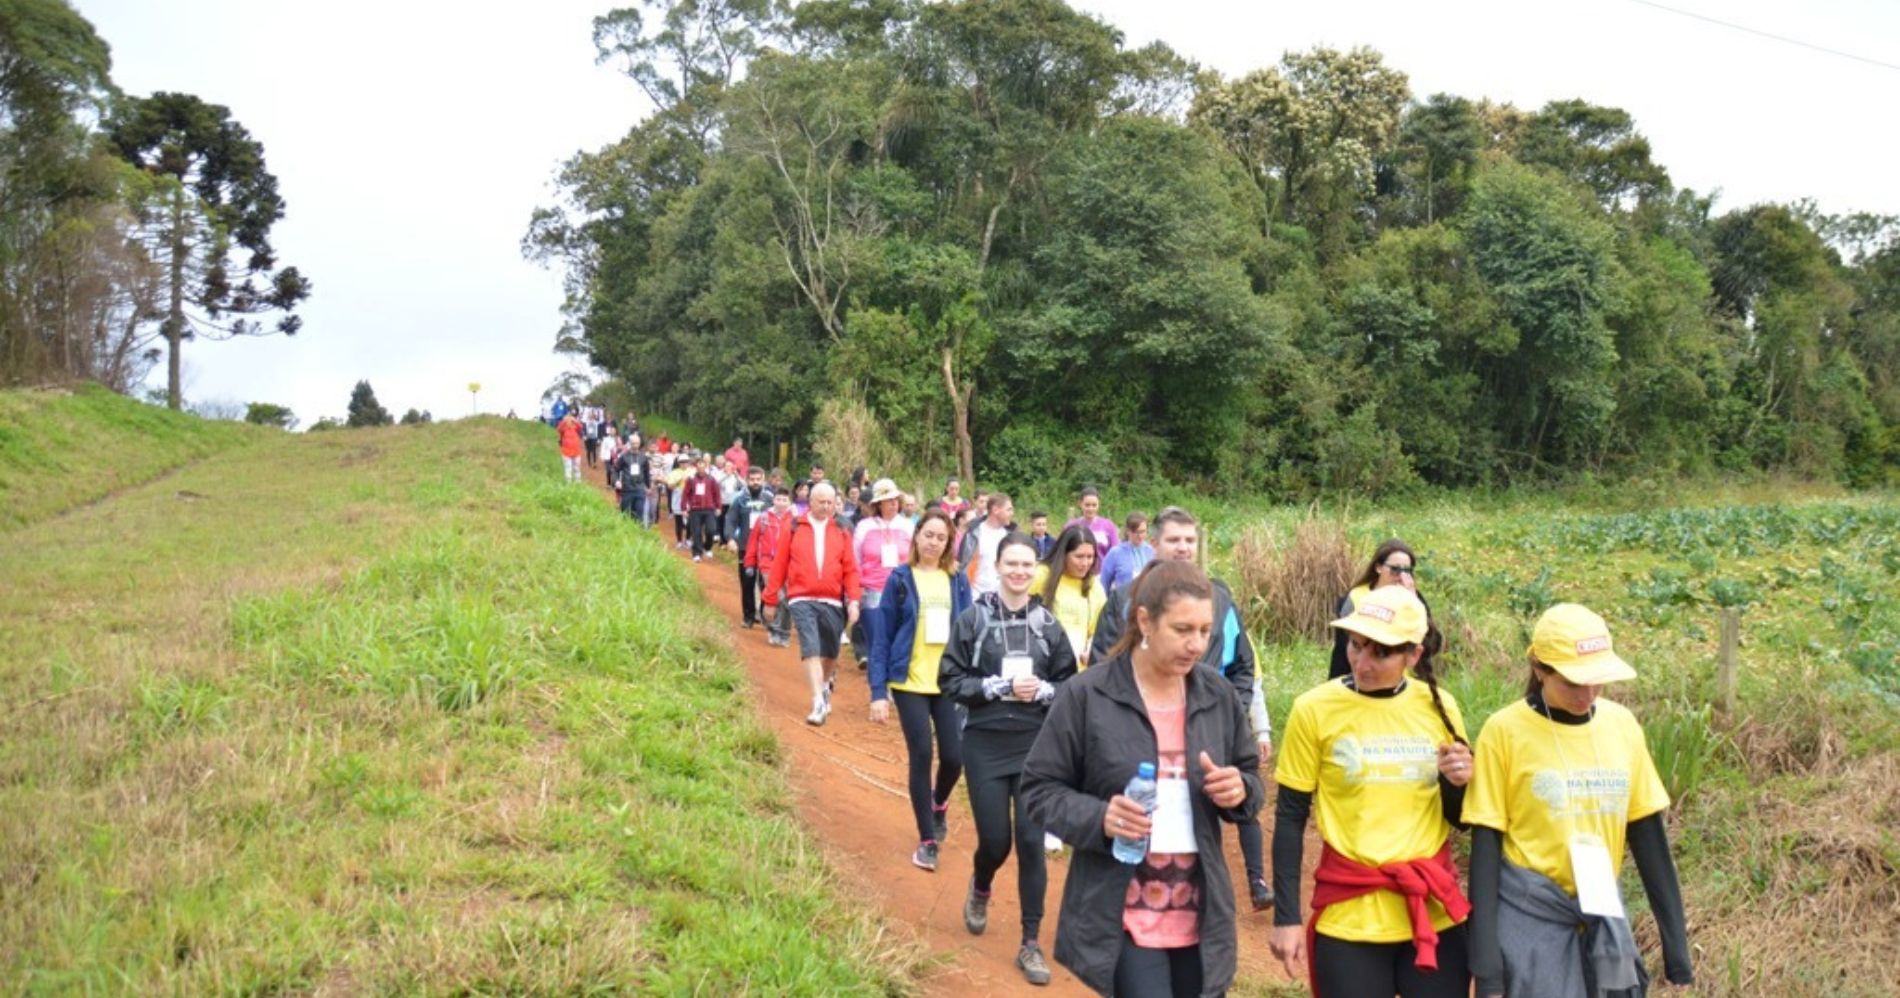 10ª Caminhada Internacional na Natureza – Circuito Rota das Colônias em São José dos Pinhais acontece neste domingo (17)